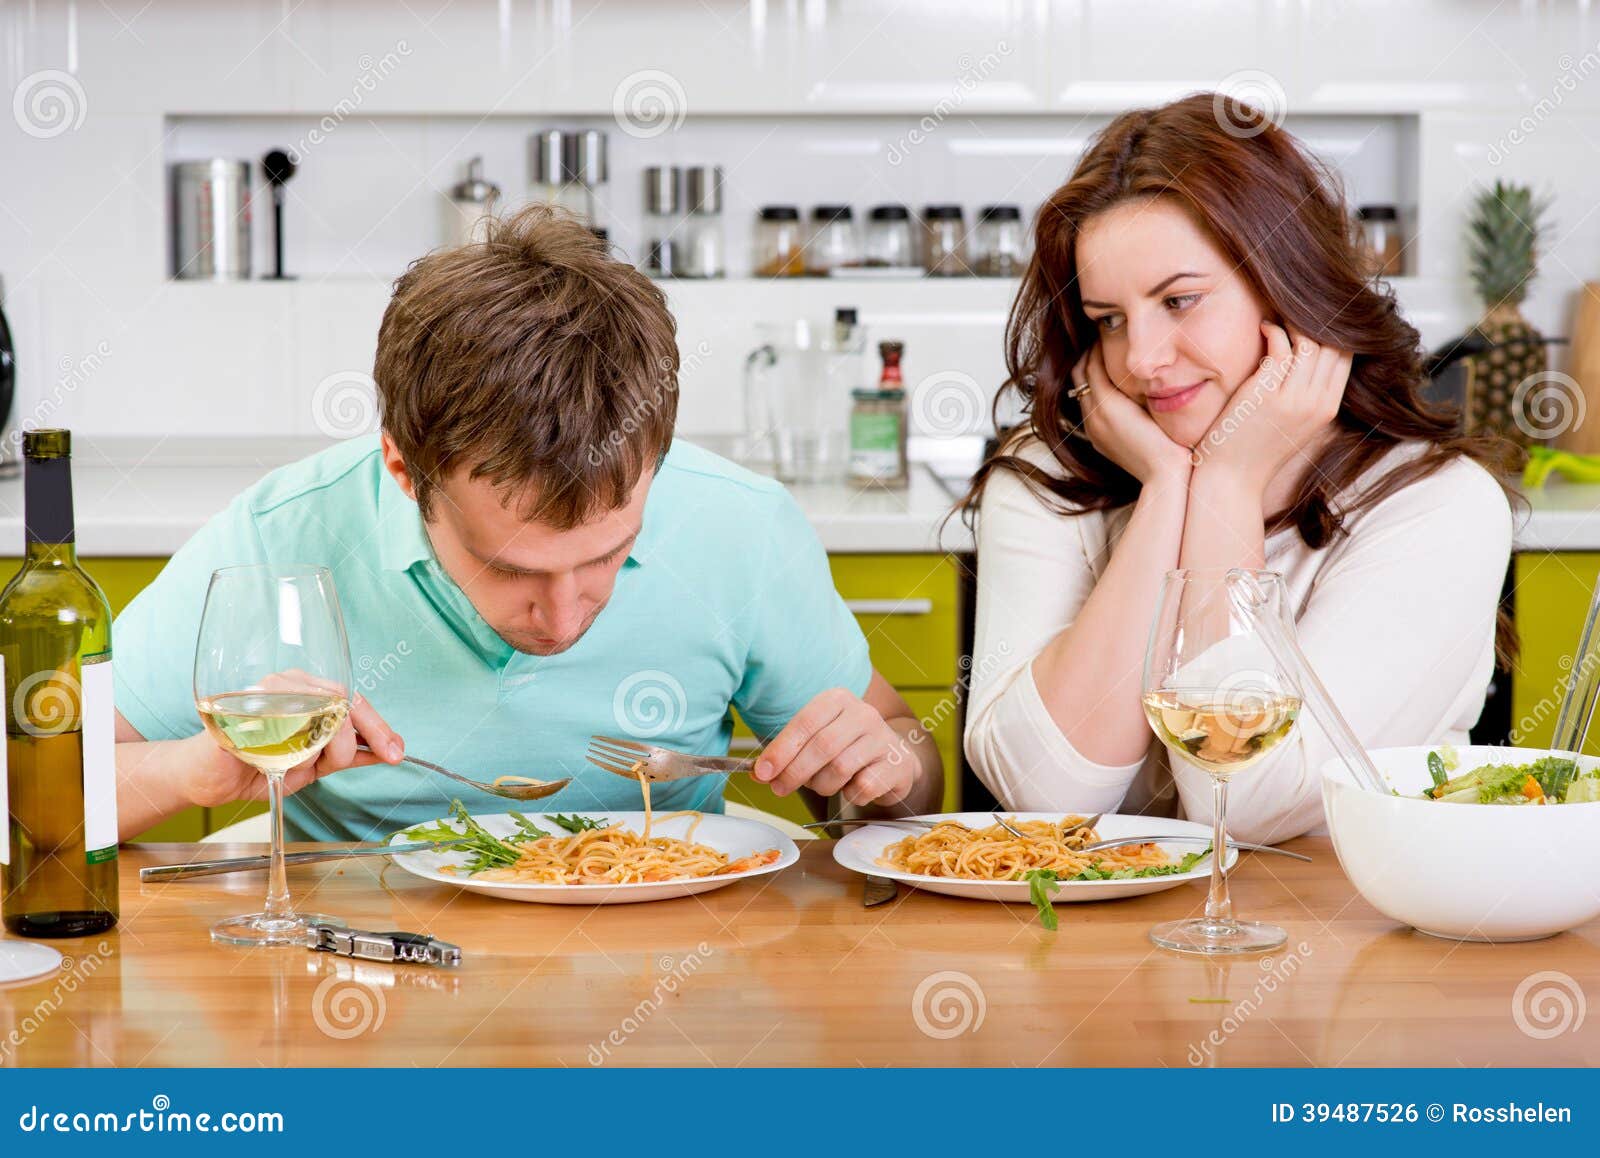 Садимся ужинать. Мужчина и женщина ужинают. Мужчина и женщина завтракают. Женщина ест мужчину. Муж ужинает на кухне.